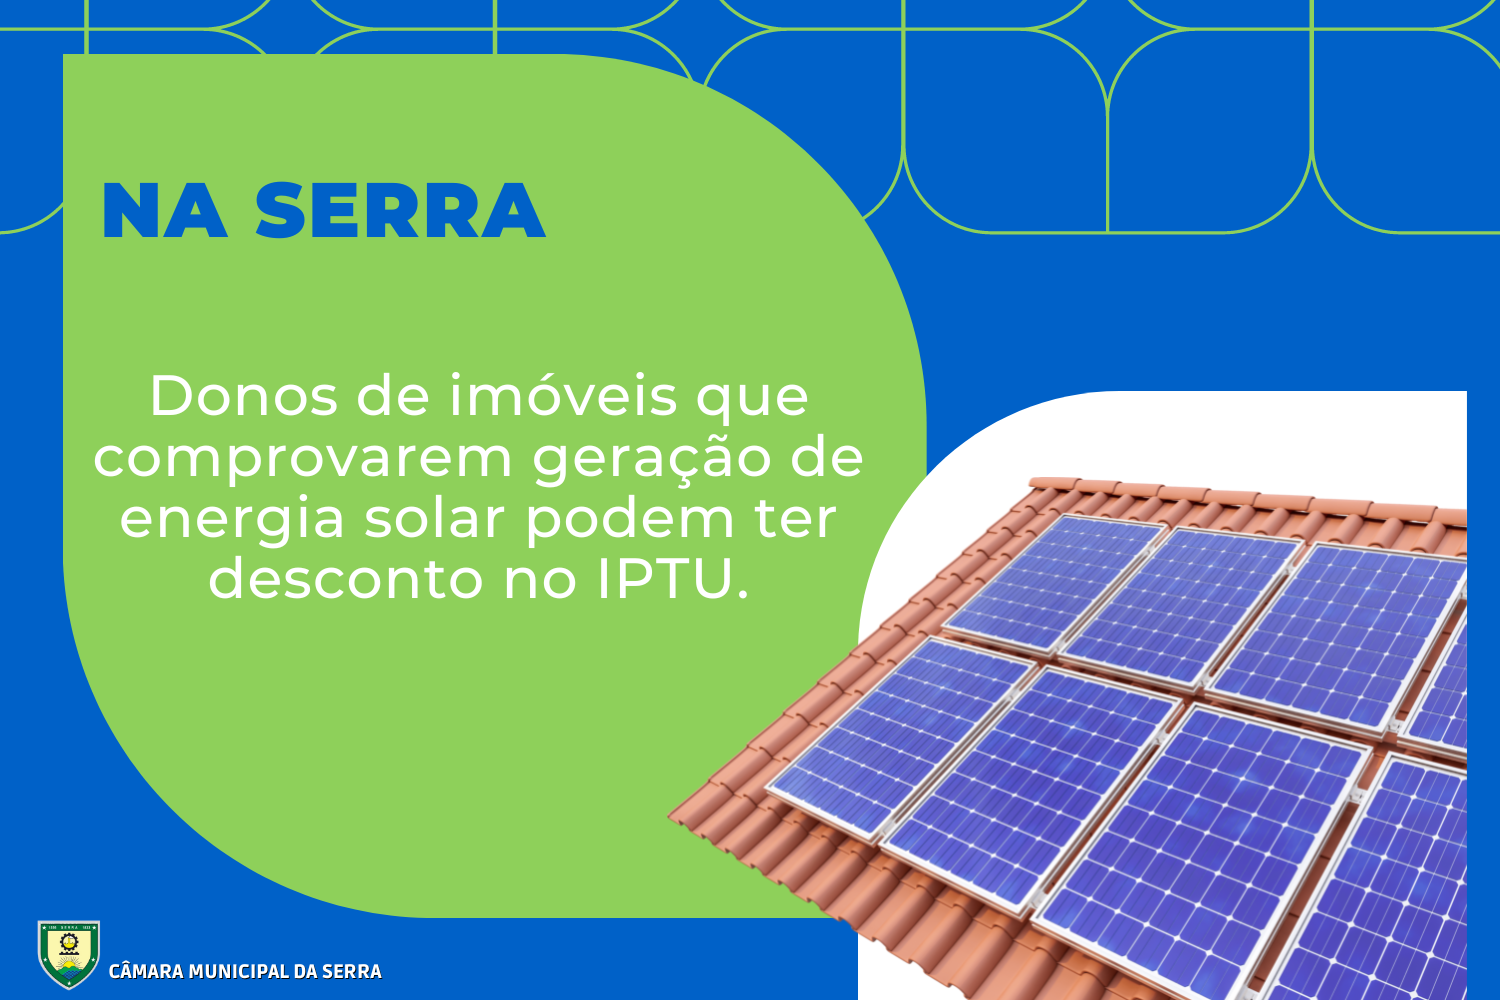 Na Serra, donos de imóveis que comprovarem geração de energia solar podem ter desconto no IPTU.